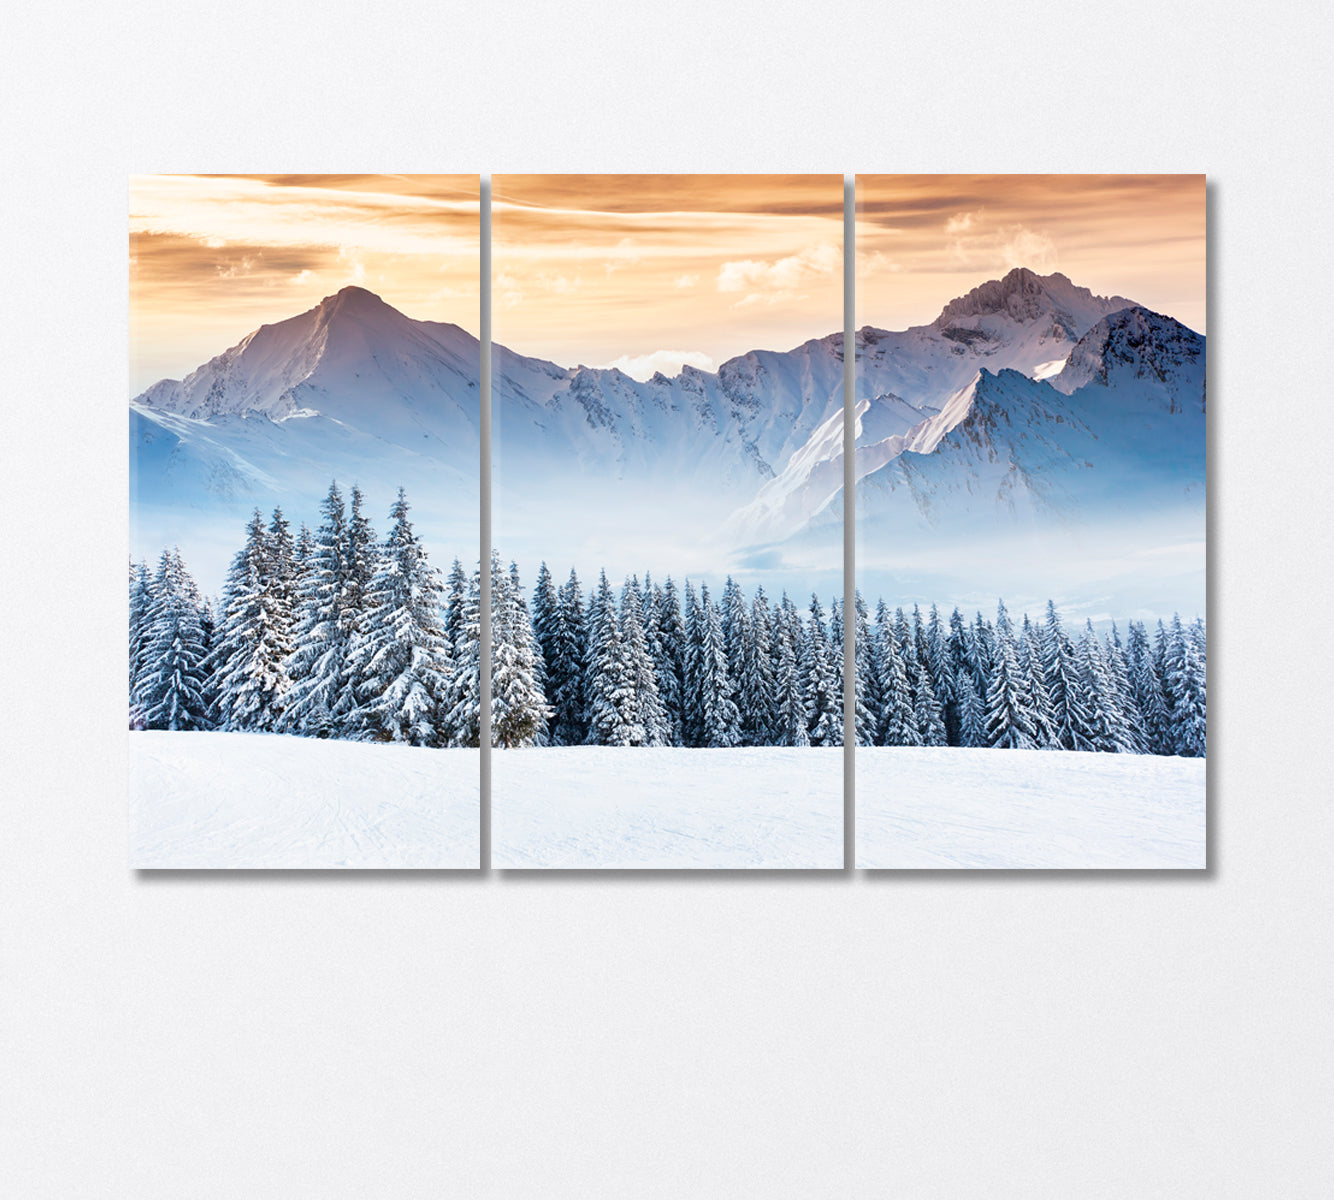 Snow Capped Mountains Fantastic Winter Landscape Canvas Print-Canvas Print-CetArt-3 Panels-36x24 inches-CetArt